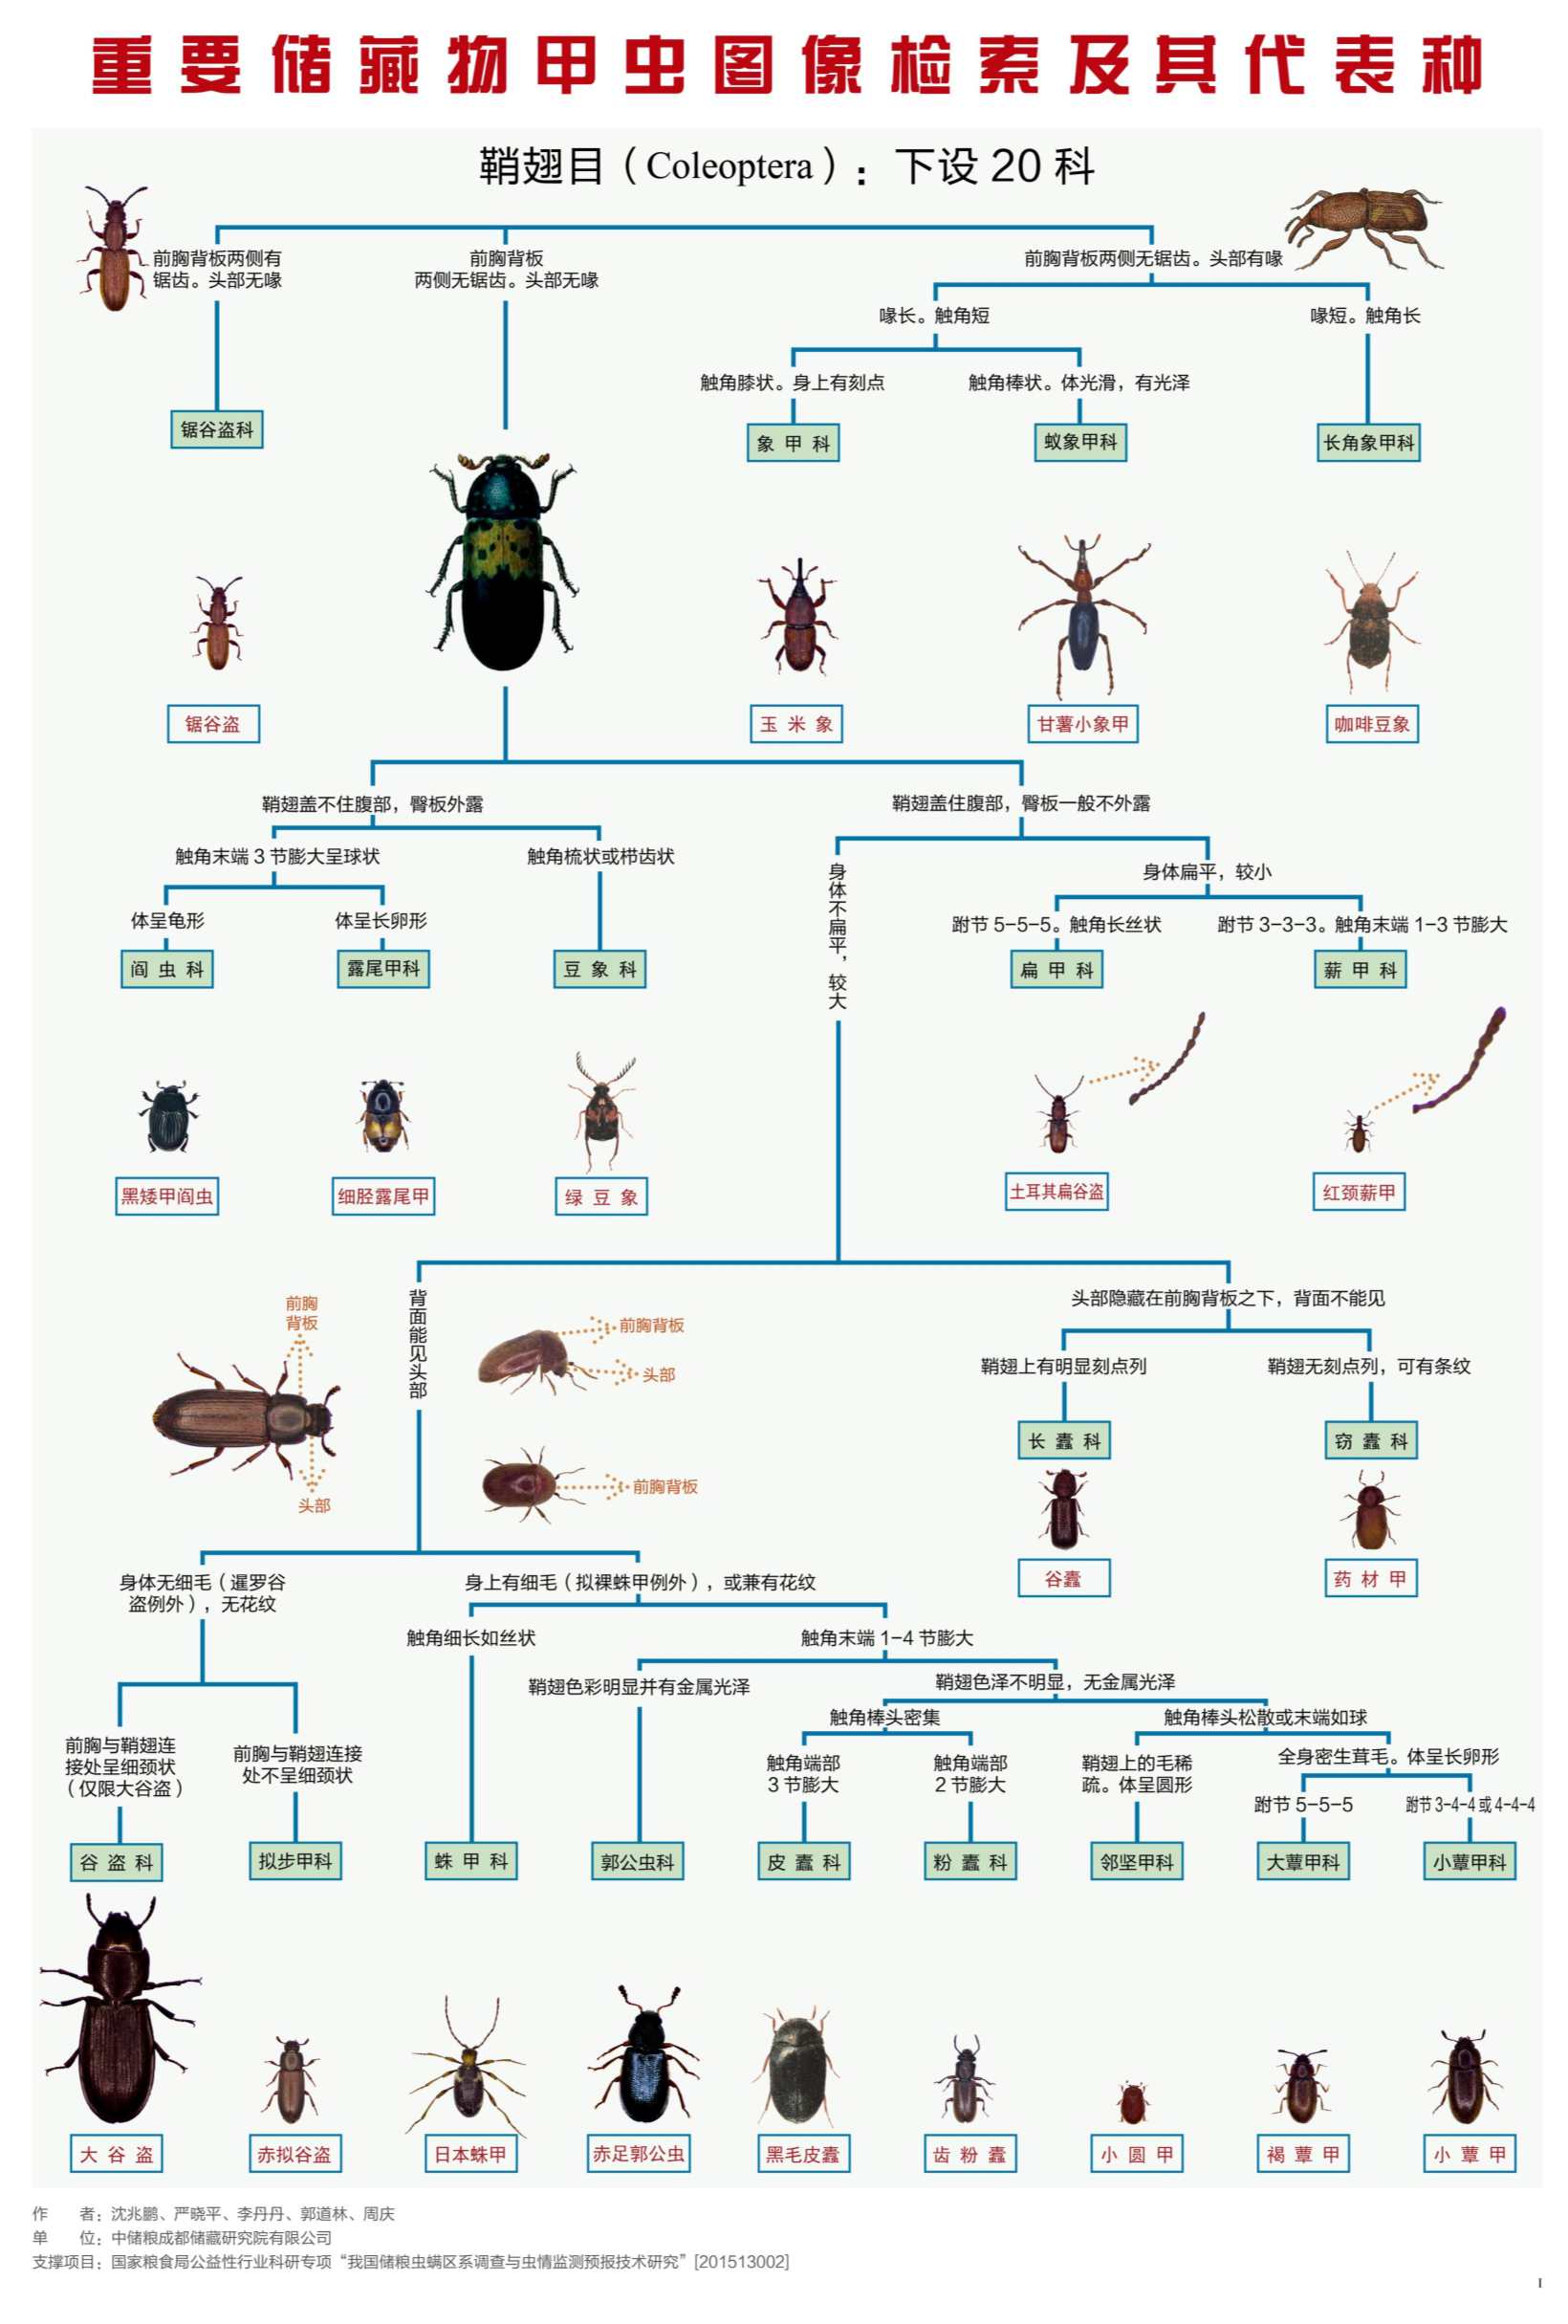 图文 《重要储藏物甲虫图像检索及其代表种》图谱_1_副本.jpg